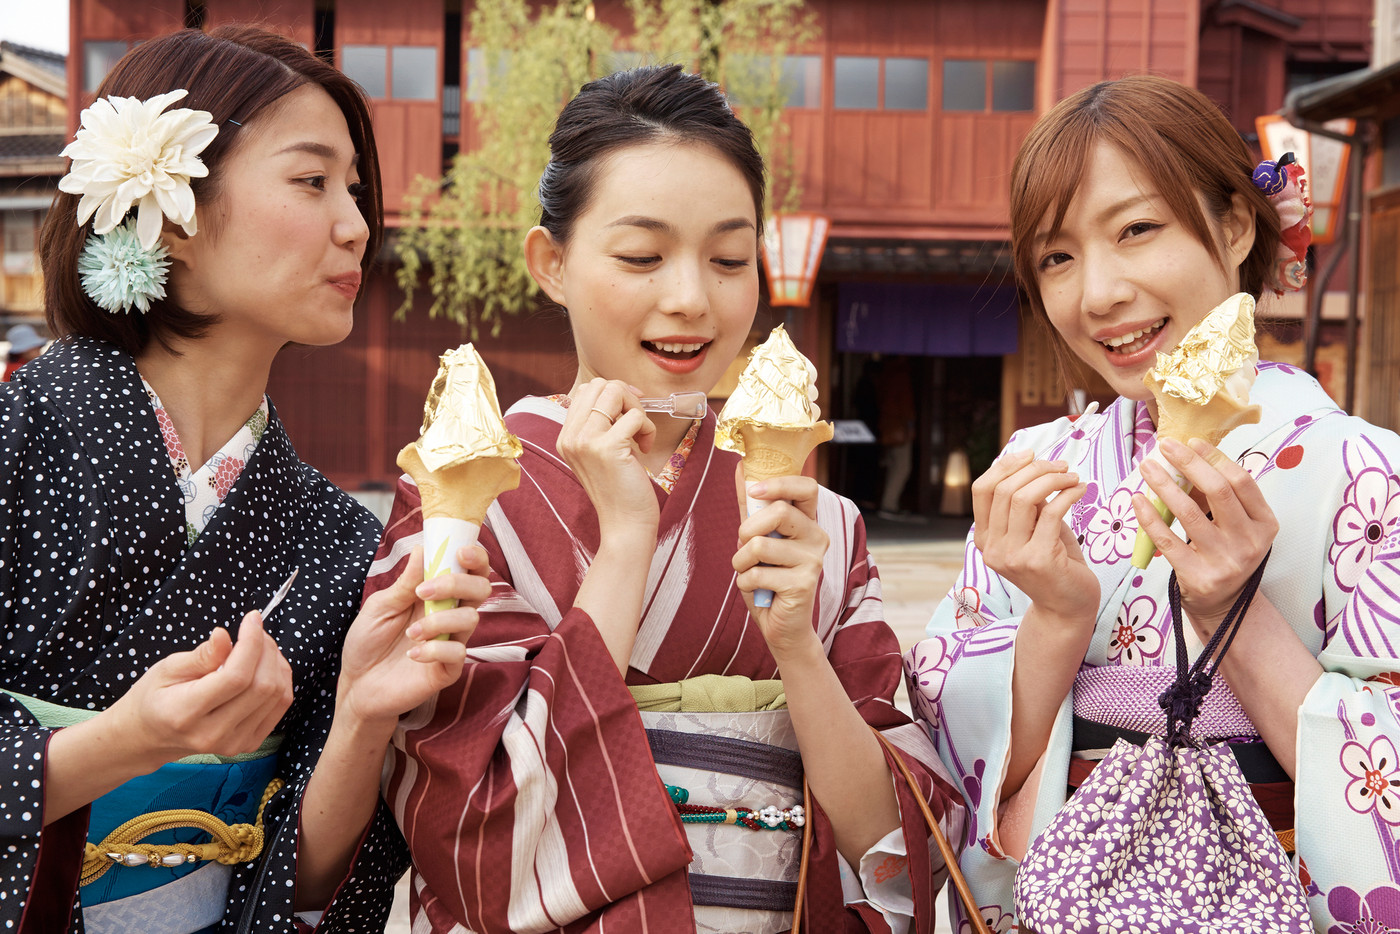 アイスクリームを食べる女性たち